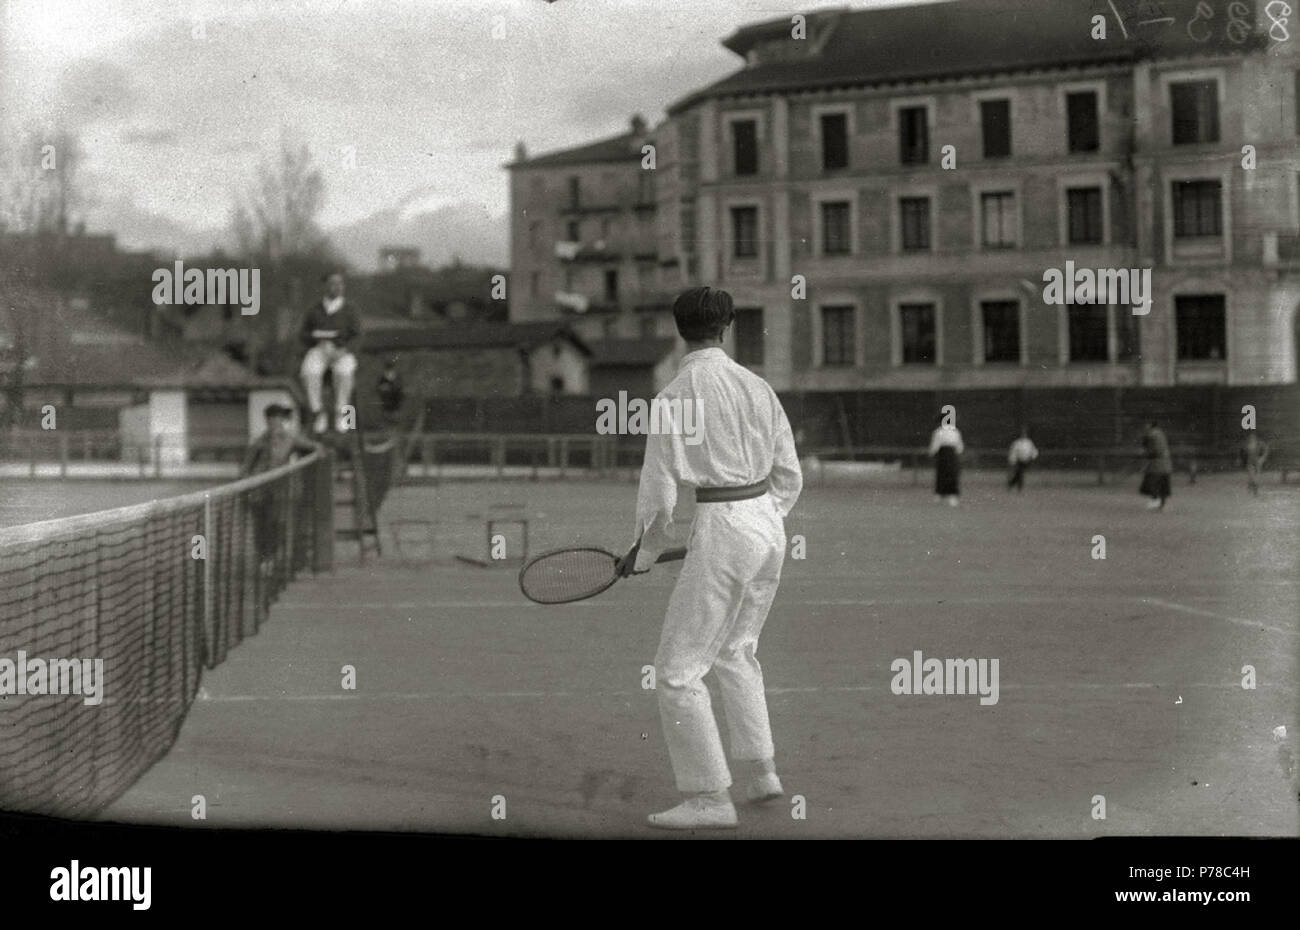 51 Pistas de tenis en las antiguas pistas de San Sebastián (7 de 12) - Fondo Car-Kutxa Fototeka Stock Photo